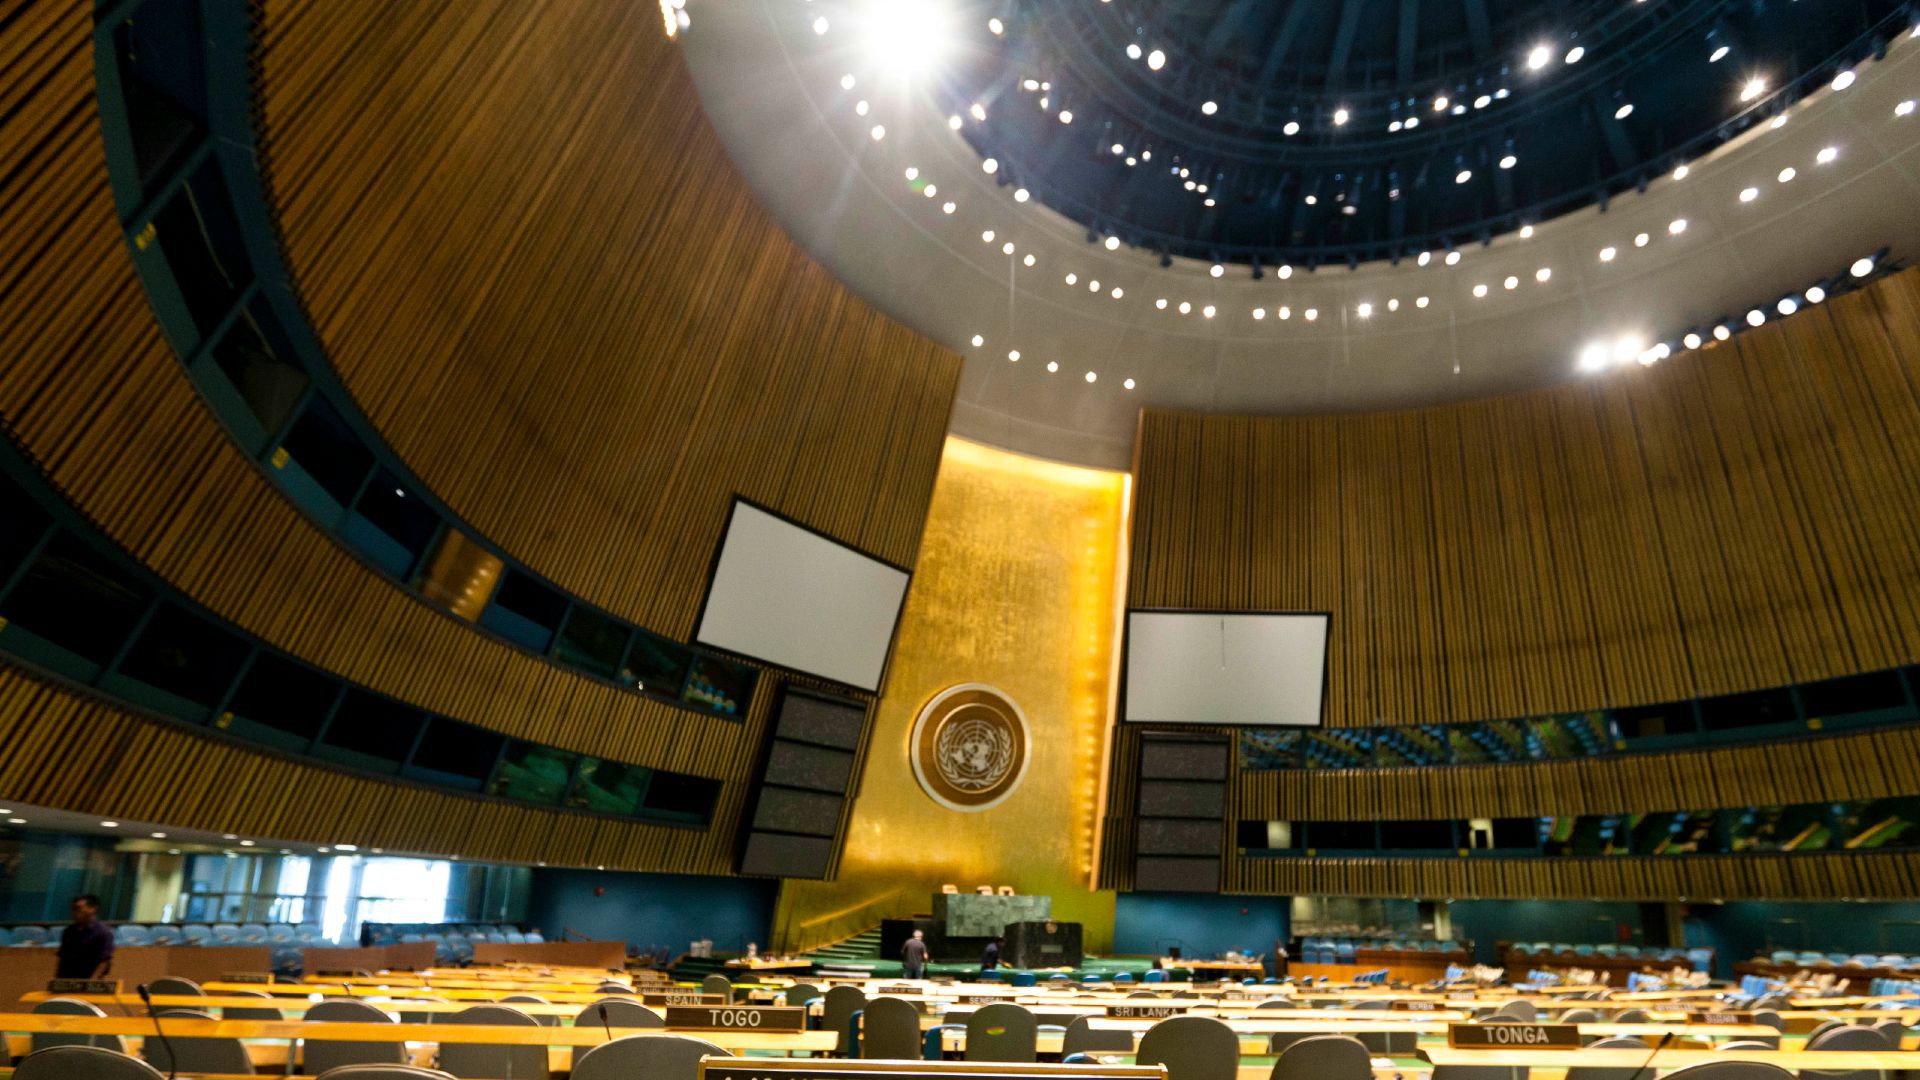 Le pape François s'adressera à l'assemblée des Nations Unies (Photo: David Nguyen/Flickr/CC BY-NC 2.0)